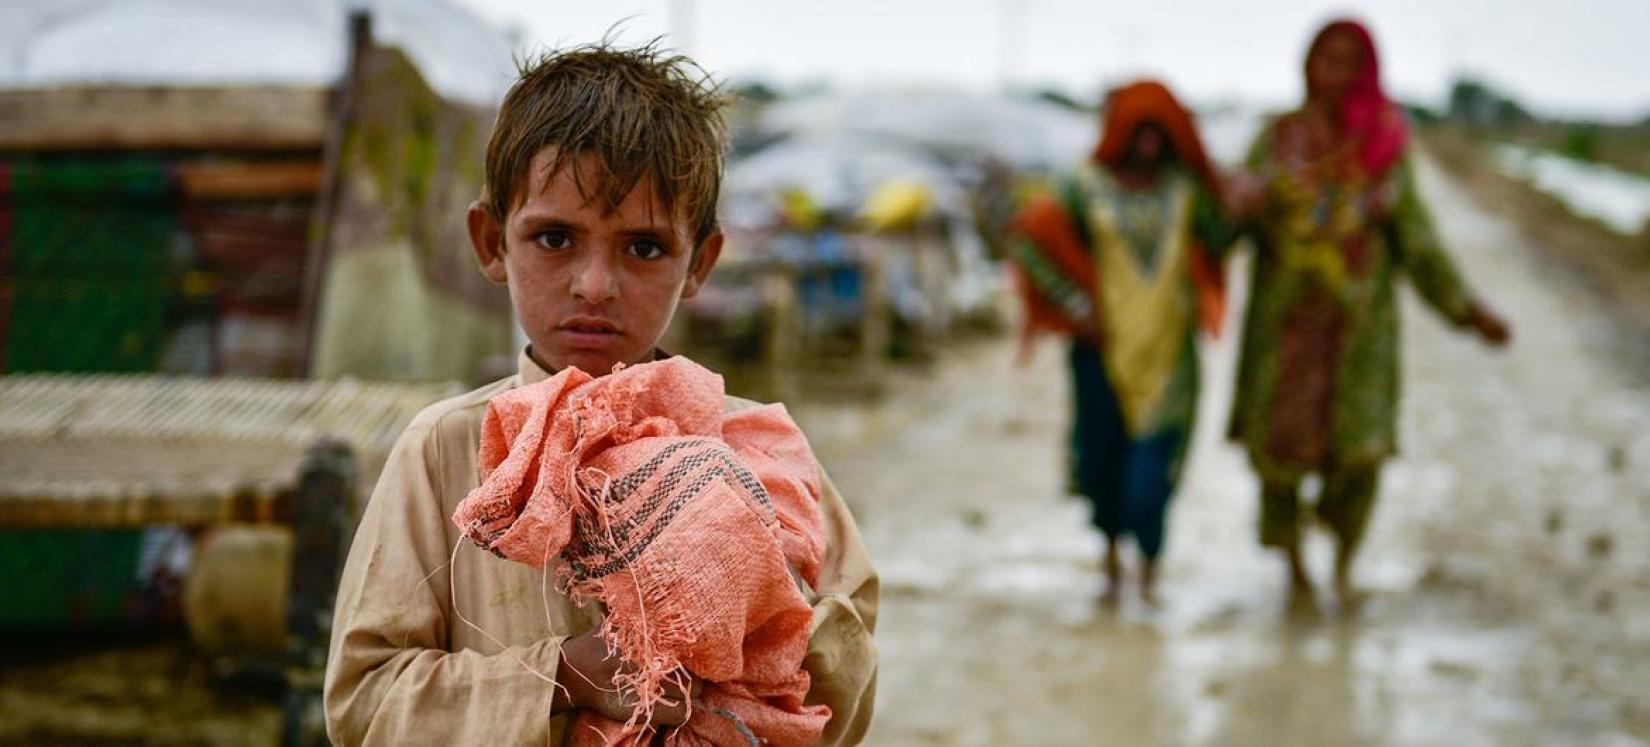 Uma criança segura seus pertences após inundações na província de Balochistan, no Paquistão.